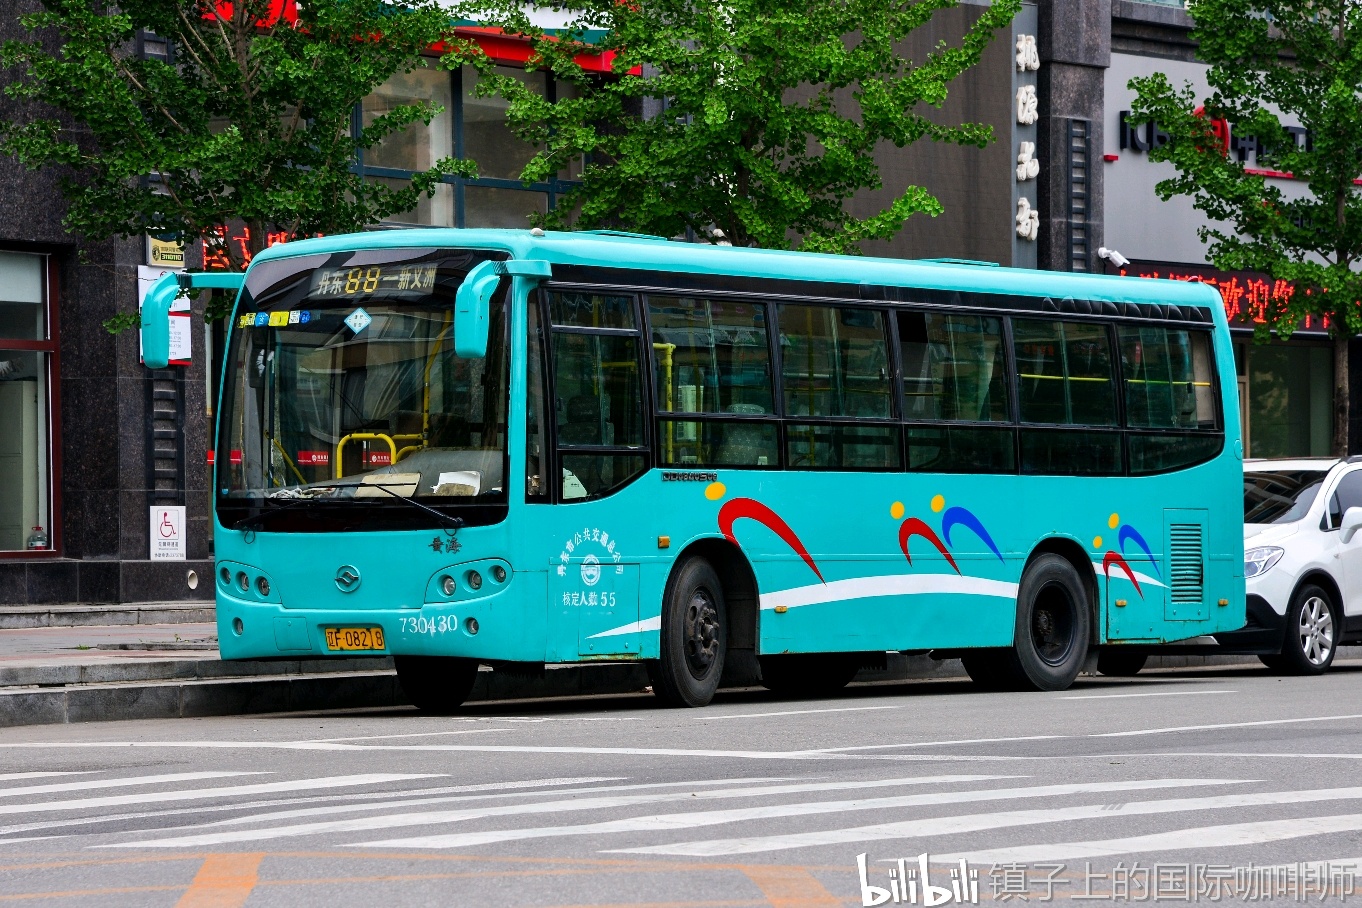 2007年左右,公交总公司向黄海订购了一台dd6840s08,和市区其他的6840